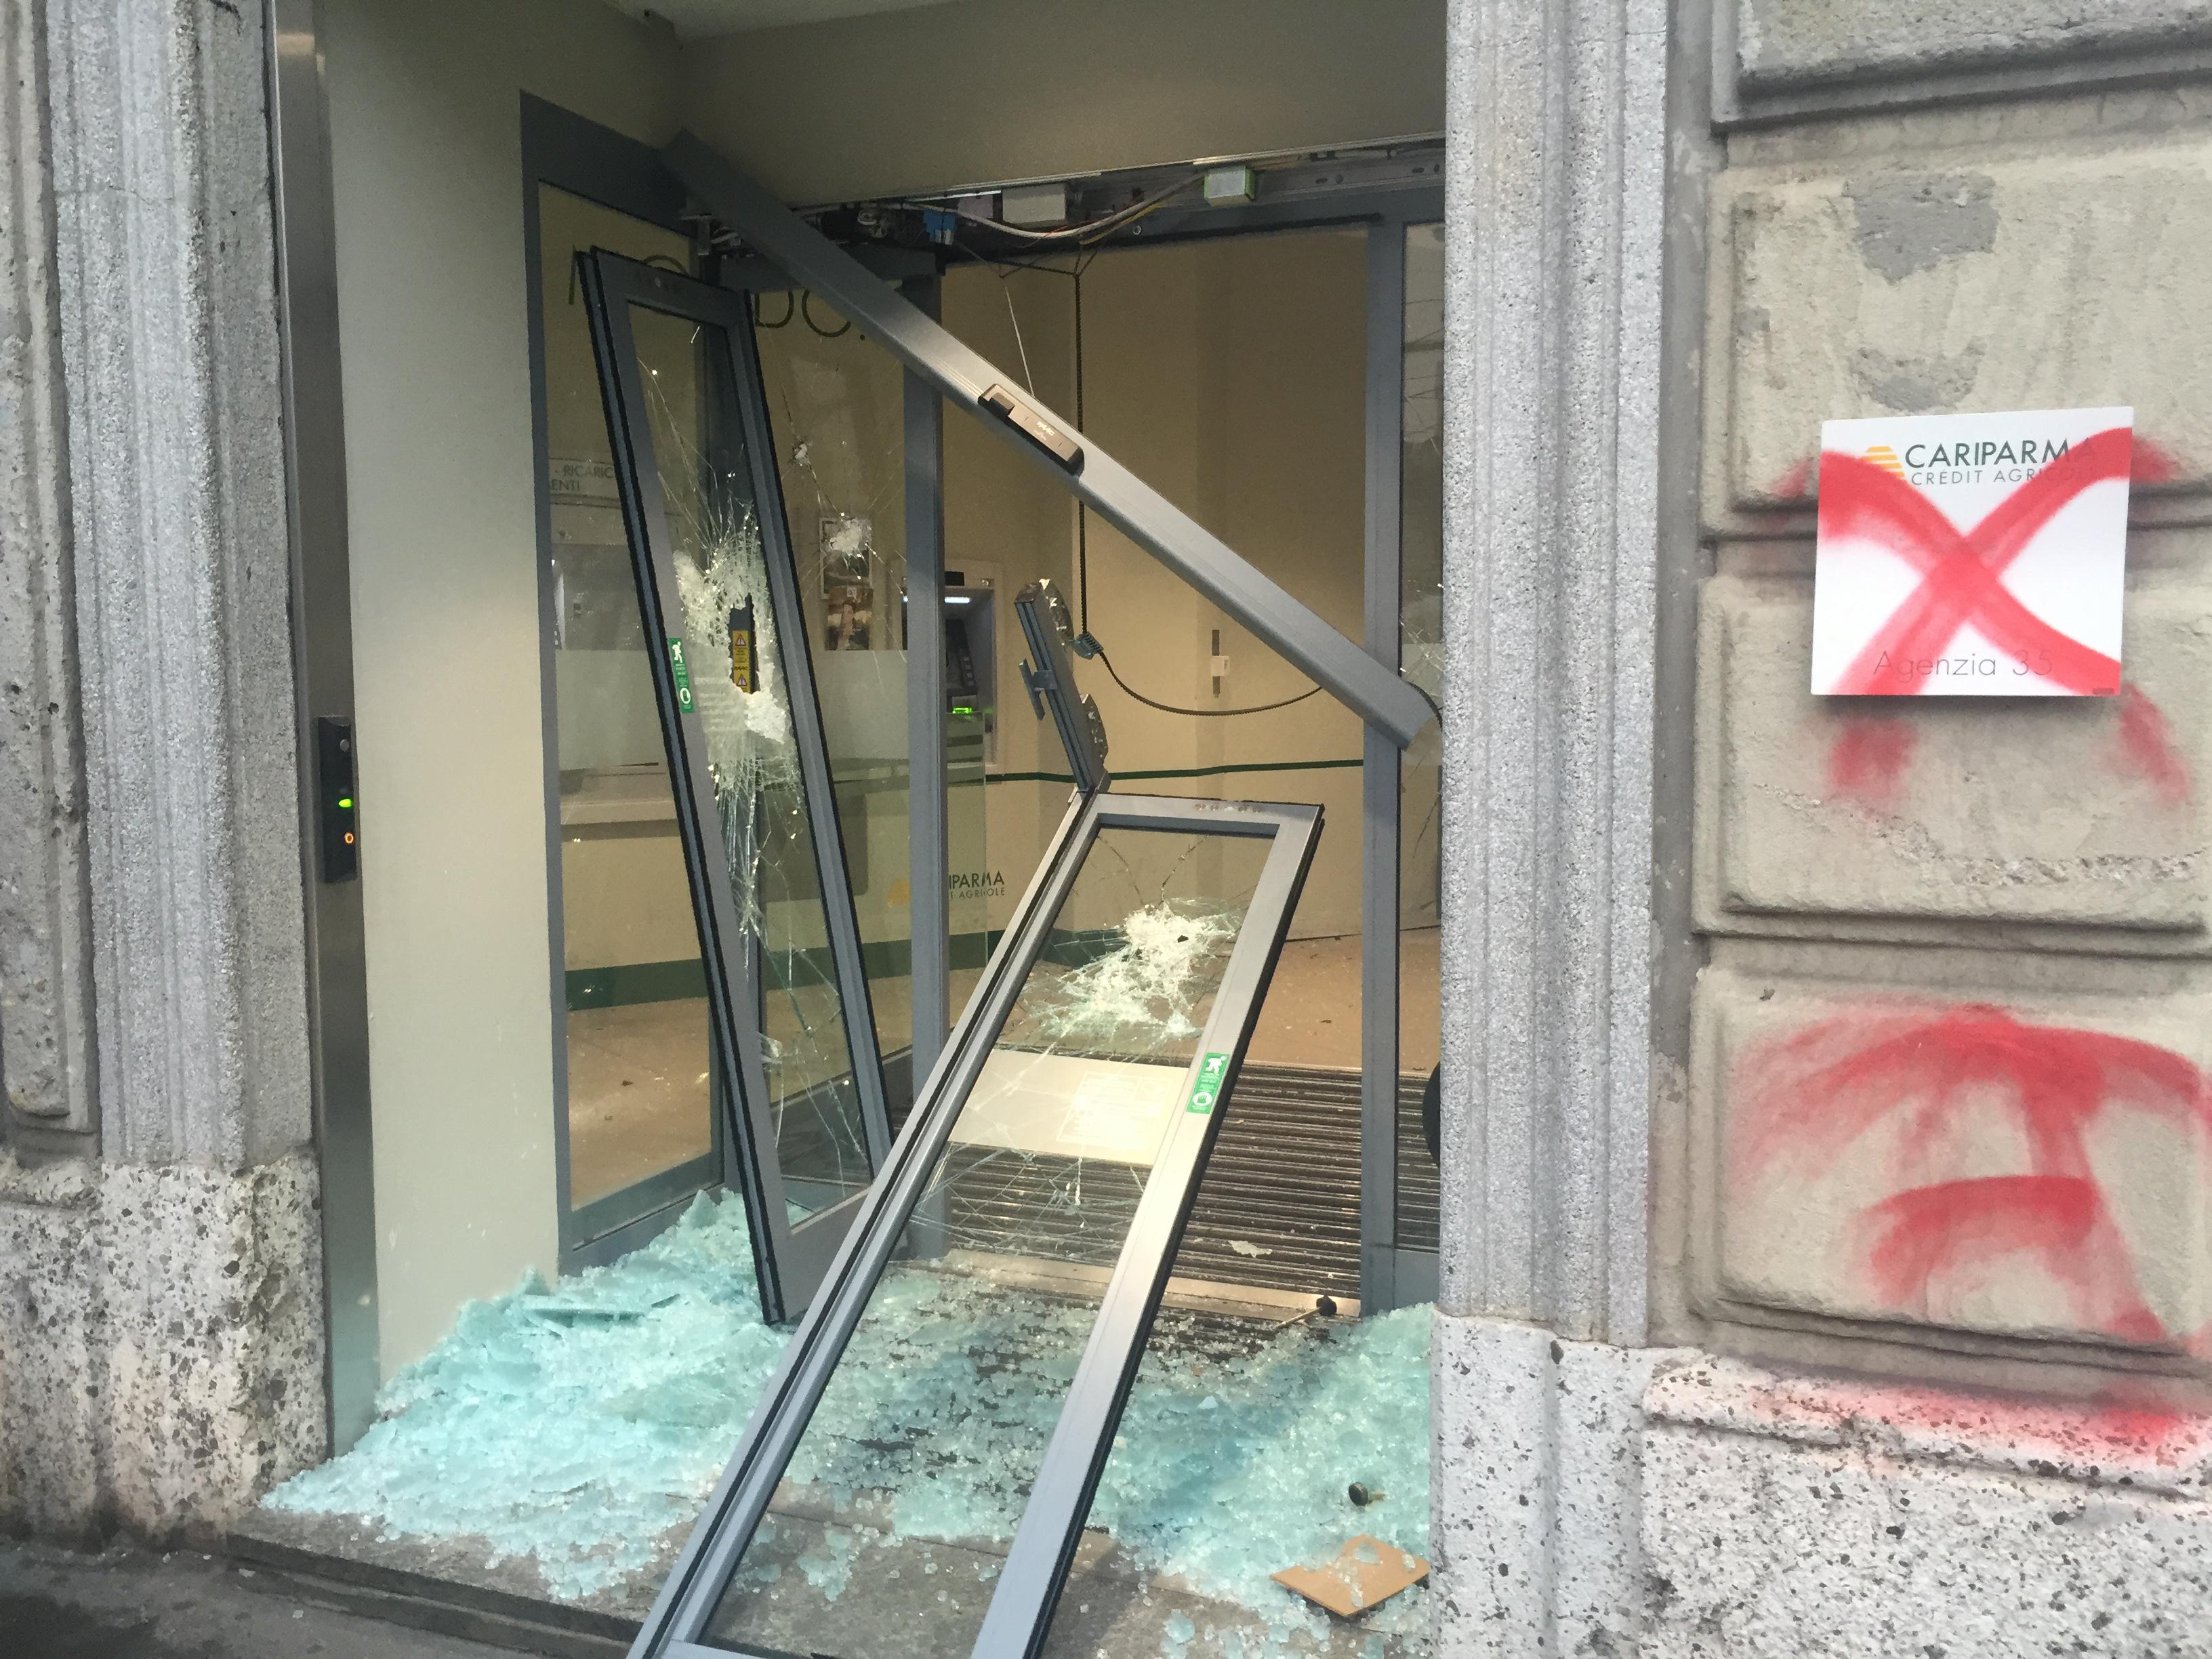 Una vetrina Cariparma devastata durante il corteo 'No Expo'